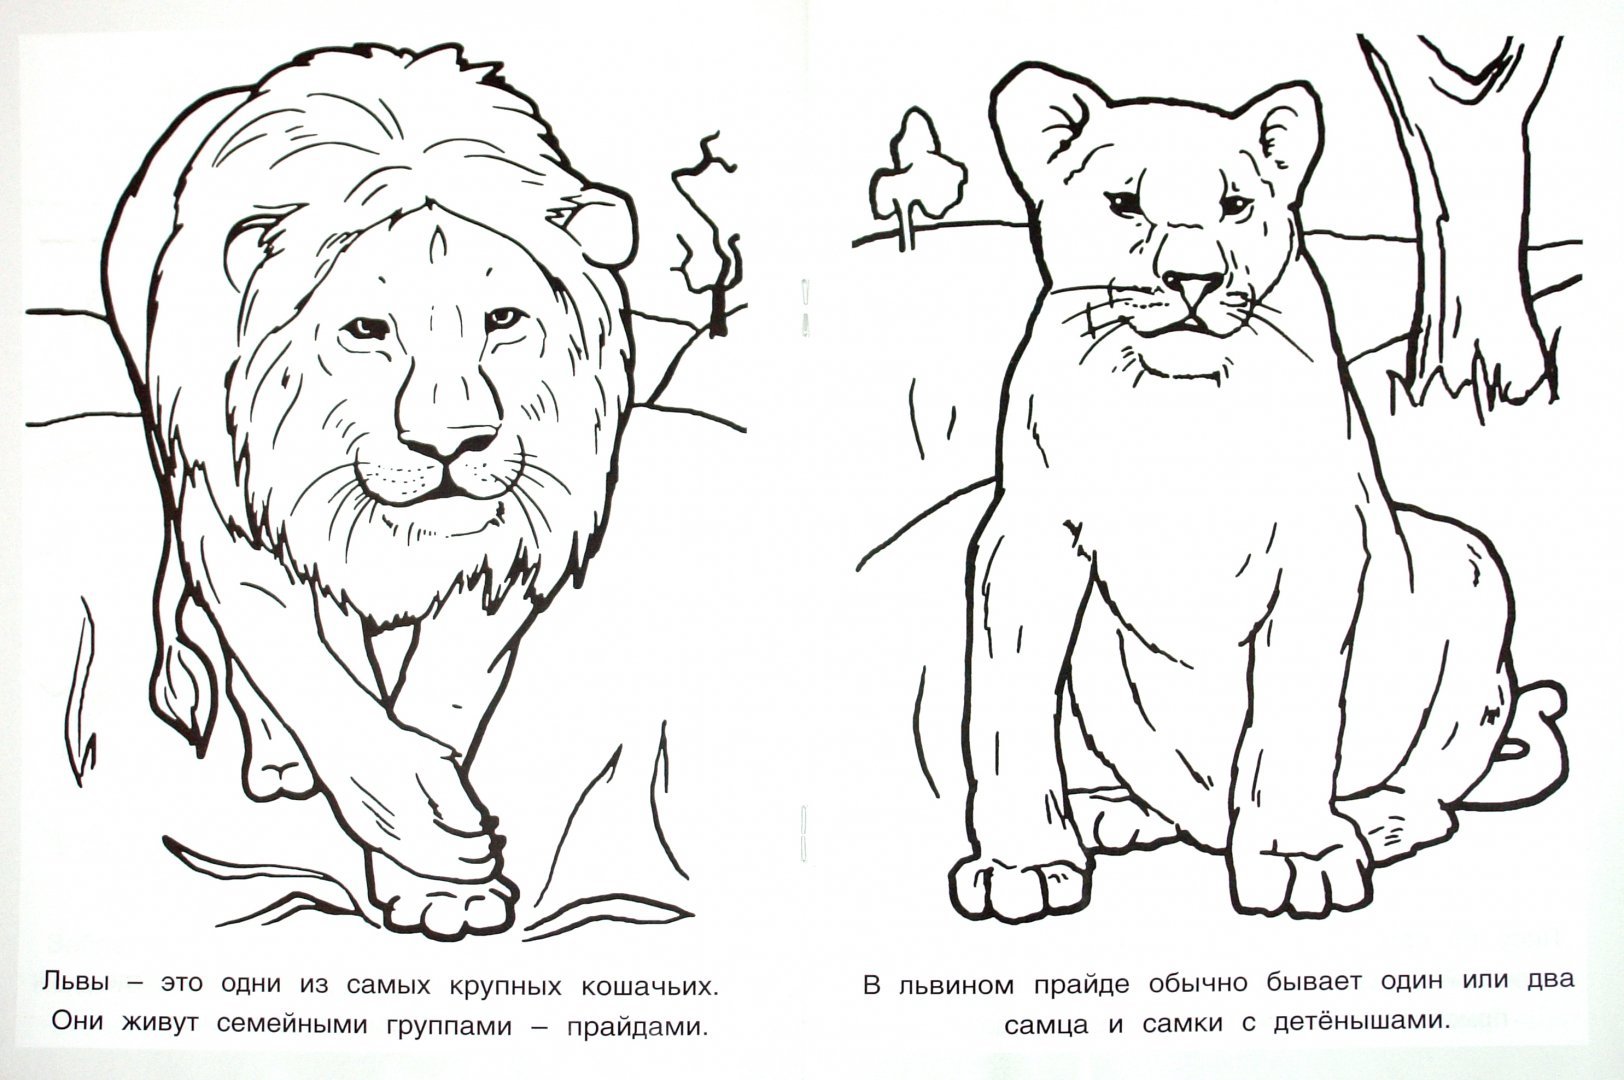 Животные красной книги России раскраска